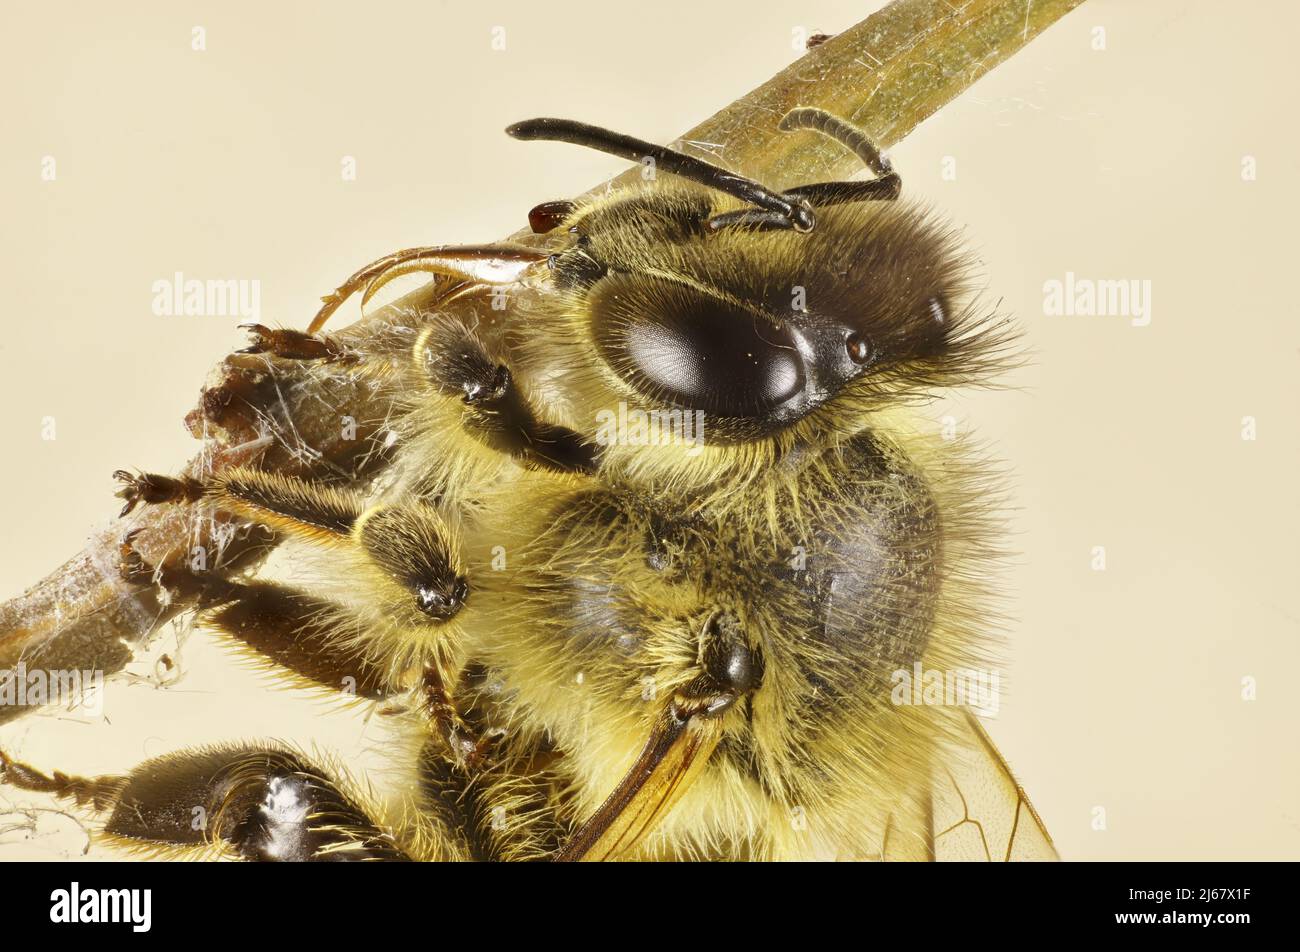 Vue super macro de Western Honey Bee (APIs mellifera) attrapé dans le web araignée Banque D'Images